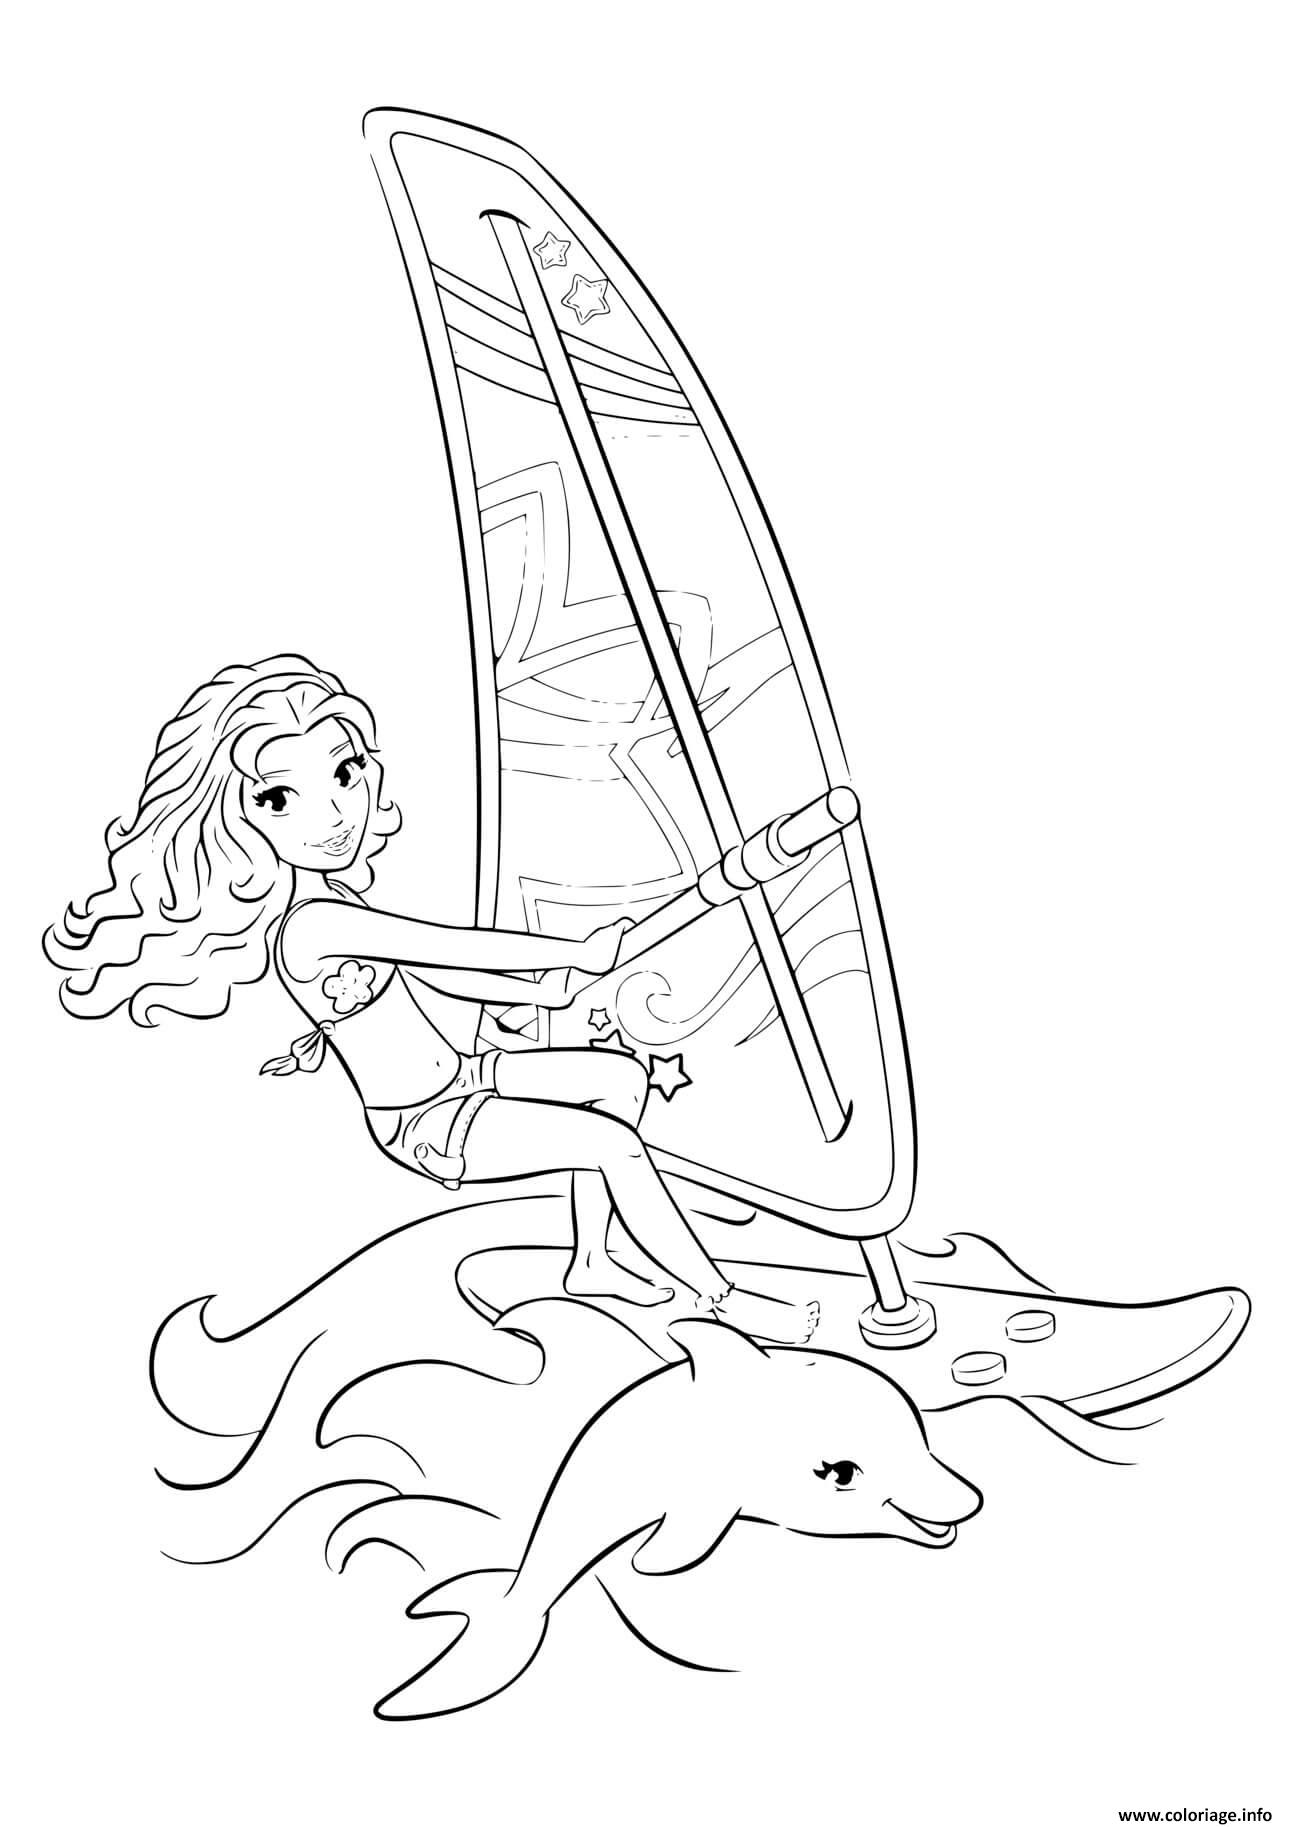 coloriage lego friends dauphin et planche sur la mer dessin a imprimer zygarde tumblr